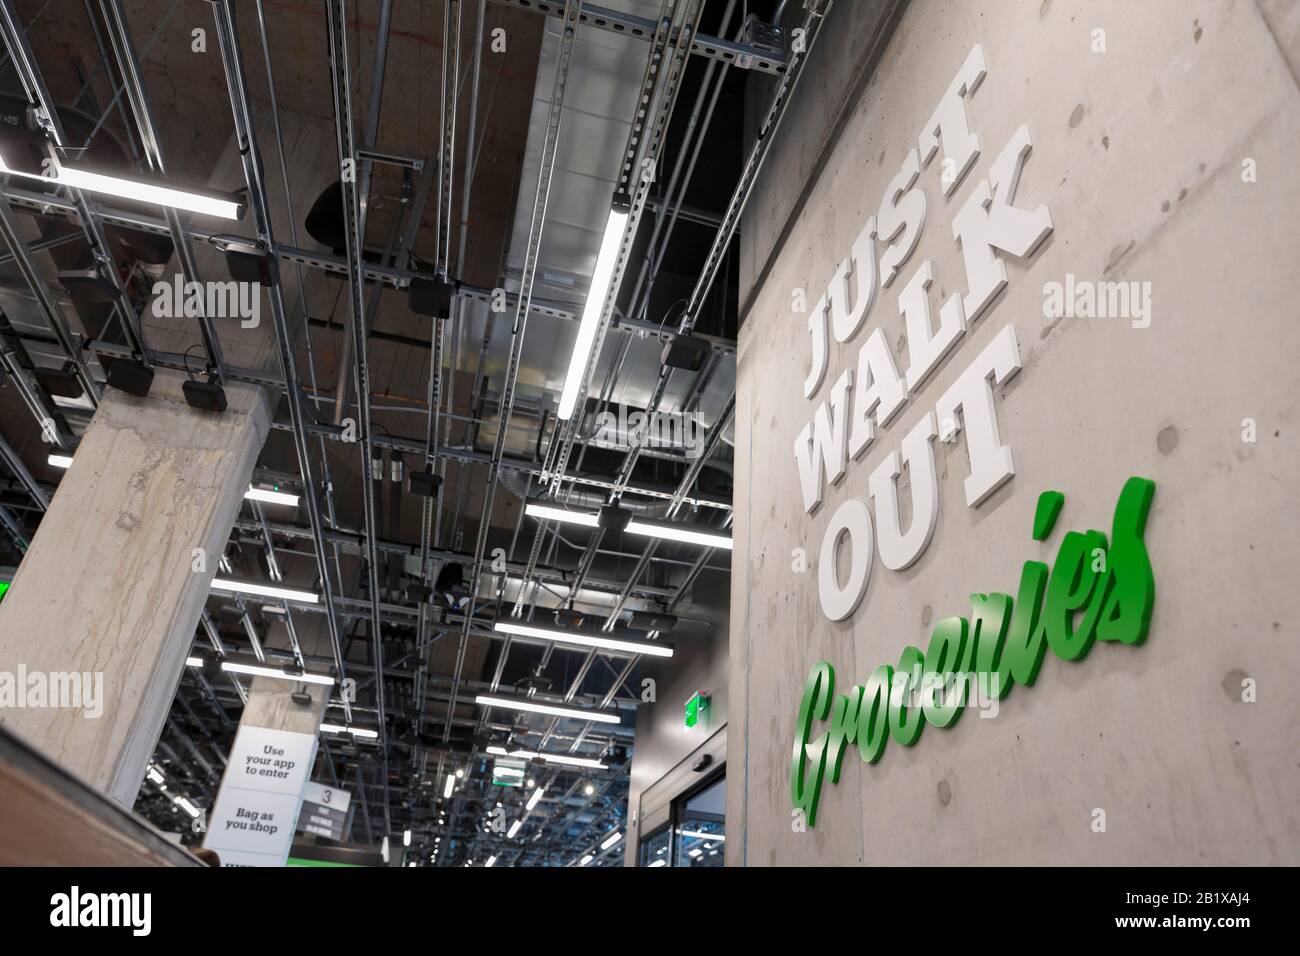 Beschilderung des Amazon Go Lebensmittellageres am 27. Februar 2020. Der  erste große, kashierlose Supermarkt des Technikunternehmens wurde Anfang  der Woche im Viertel Capitol Hill in Seattle eröffnet. Kunden scannen eine  Amazon Go